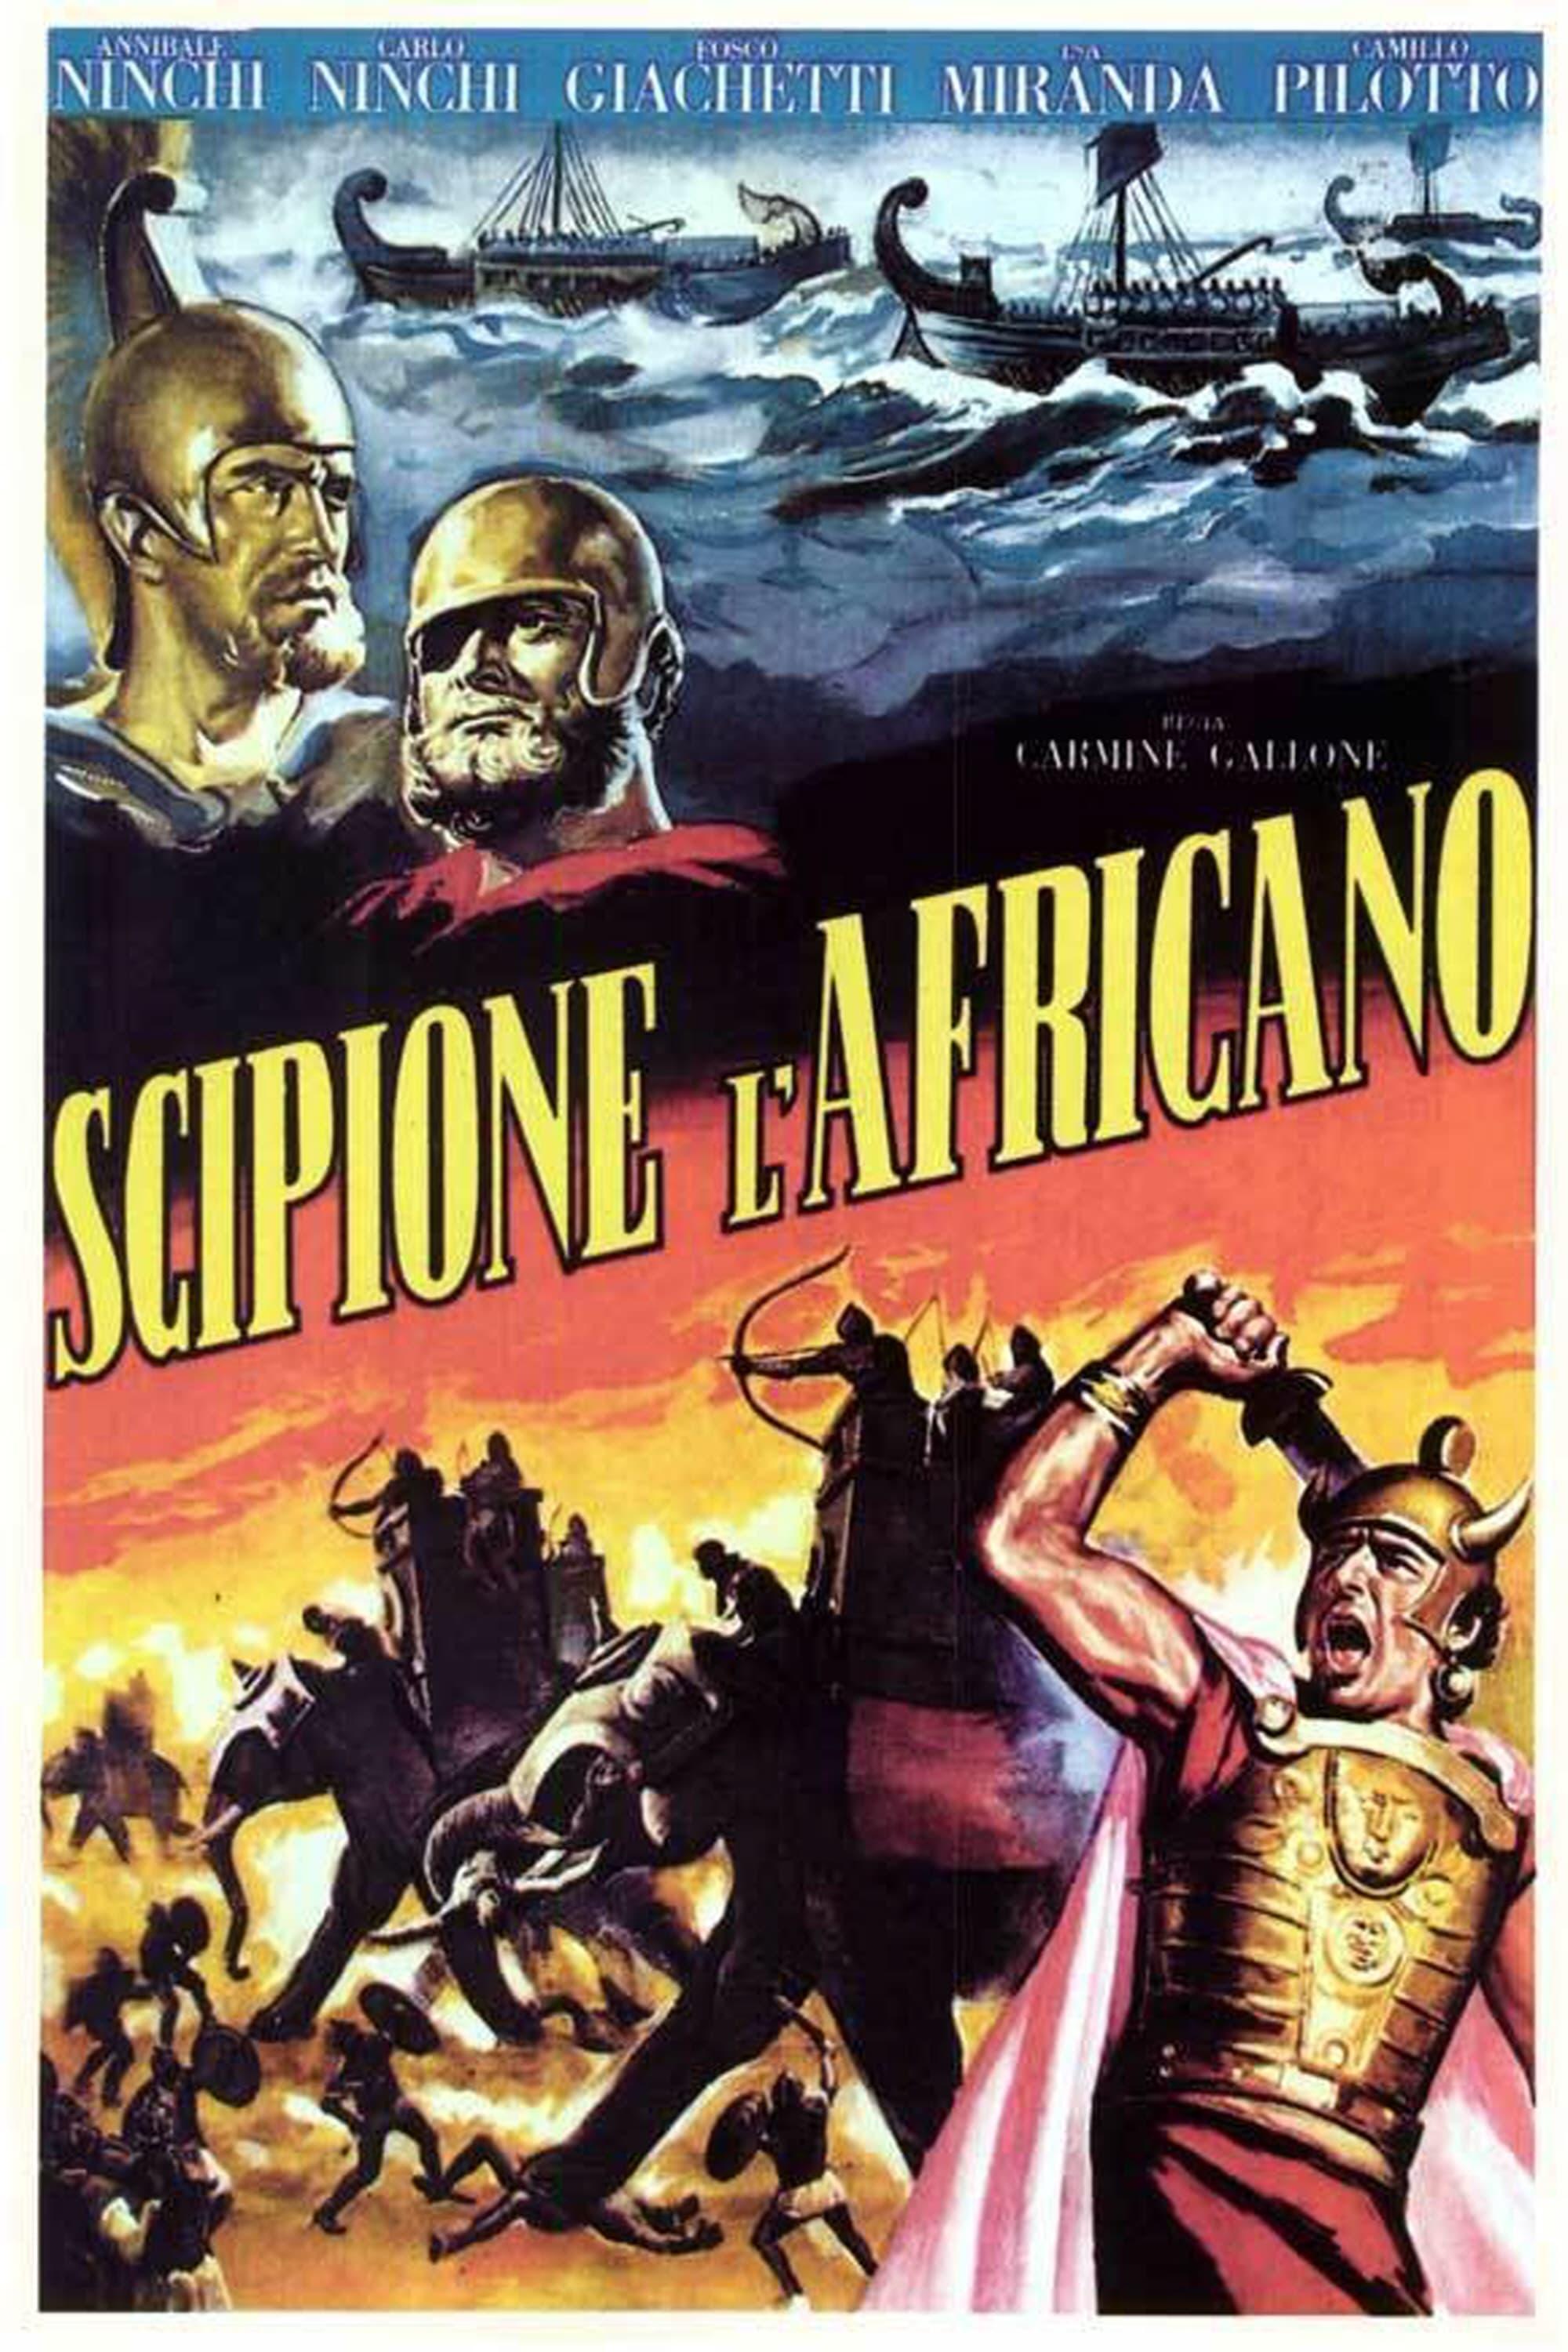 Scipio Africanus: The Defeat of Hannibal poster